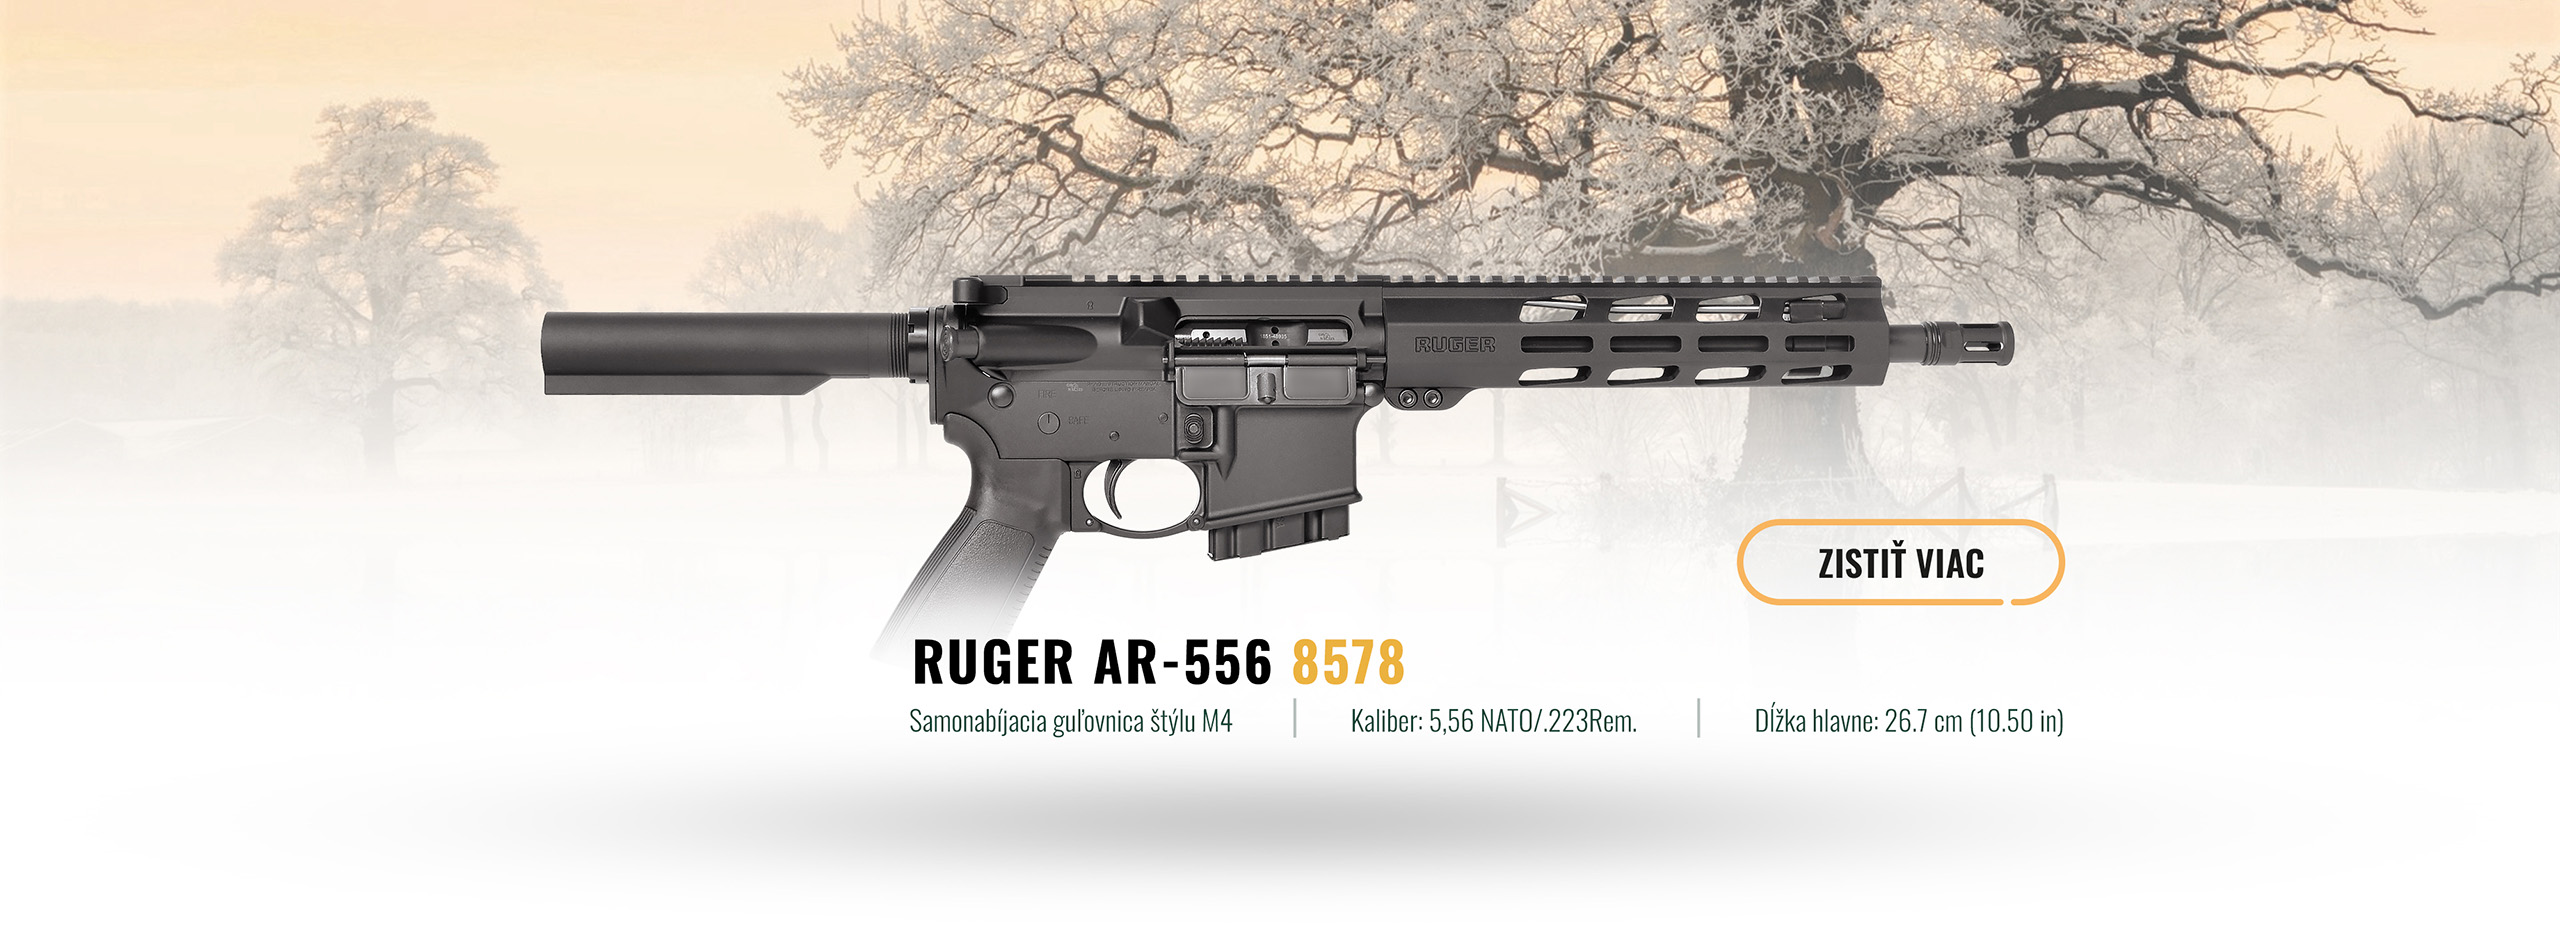 Ruger AR-556 8578